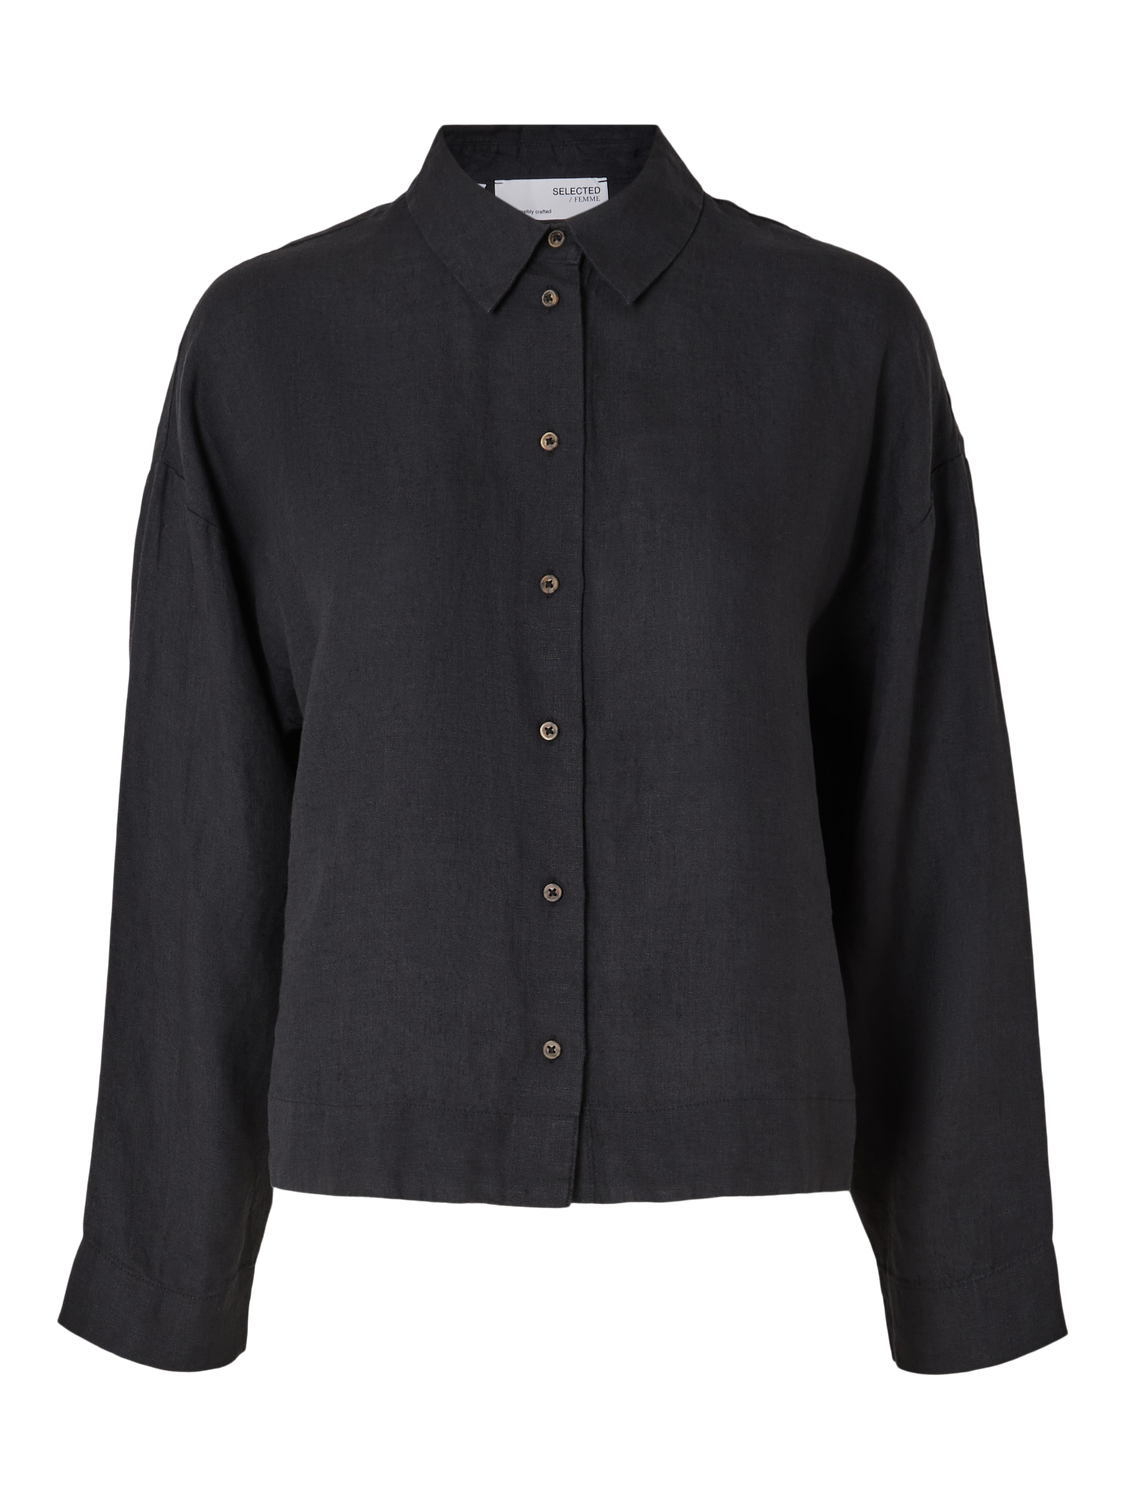 Linnie linskjorte fra Selected Femme er en klassisk og kul skjorte som er perfekt i de varmere månedene. Skjorten har en boxy, kort og litt oversized fasong som gjør den perfekt til bukser med høyt liv.